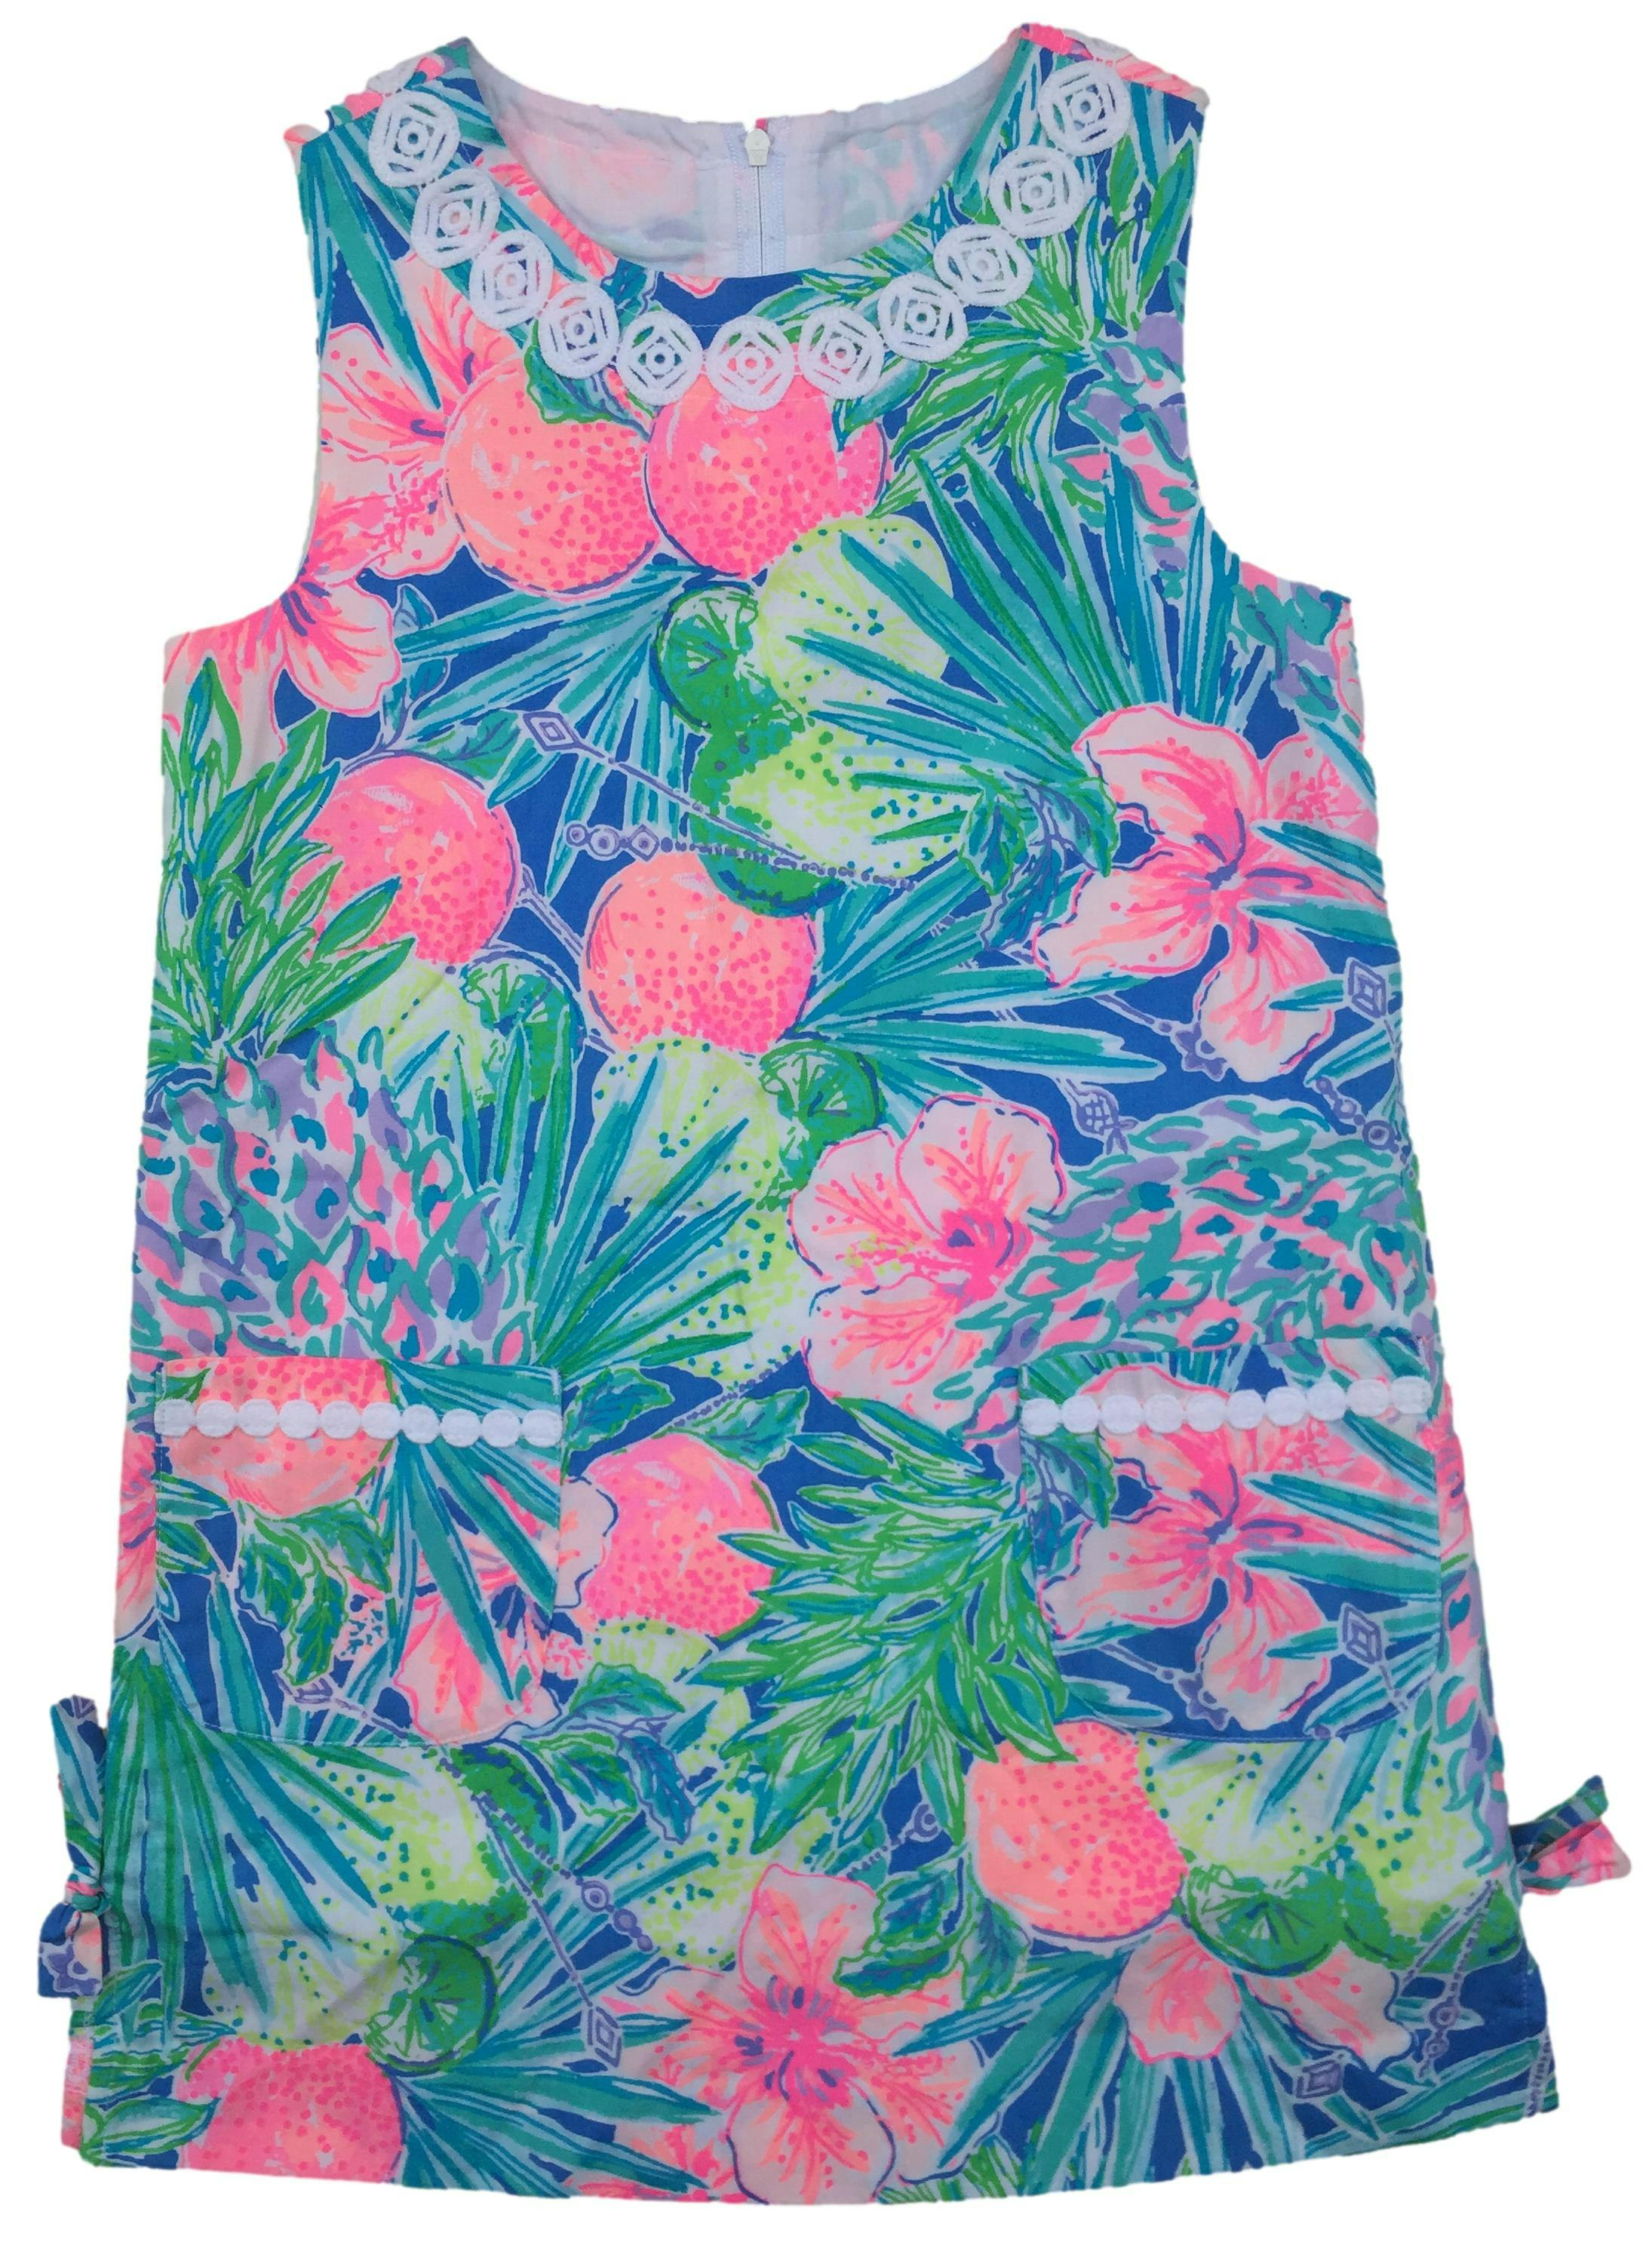 Vestido Lily Pulitzer con estampado tropical, bordado en cuello y bolsillos, cierre invisible posterior.